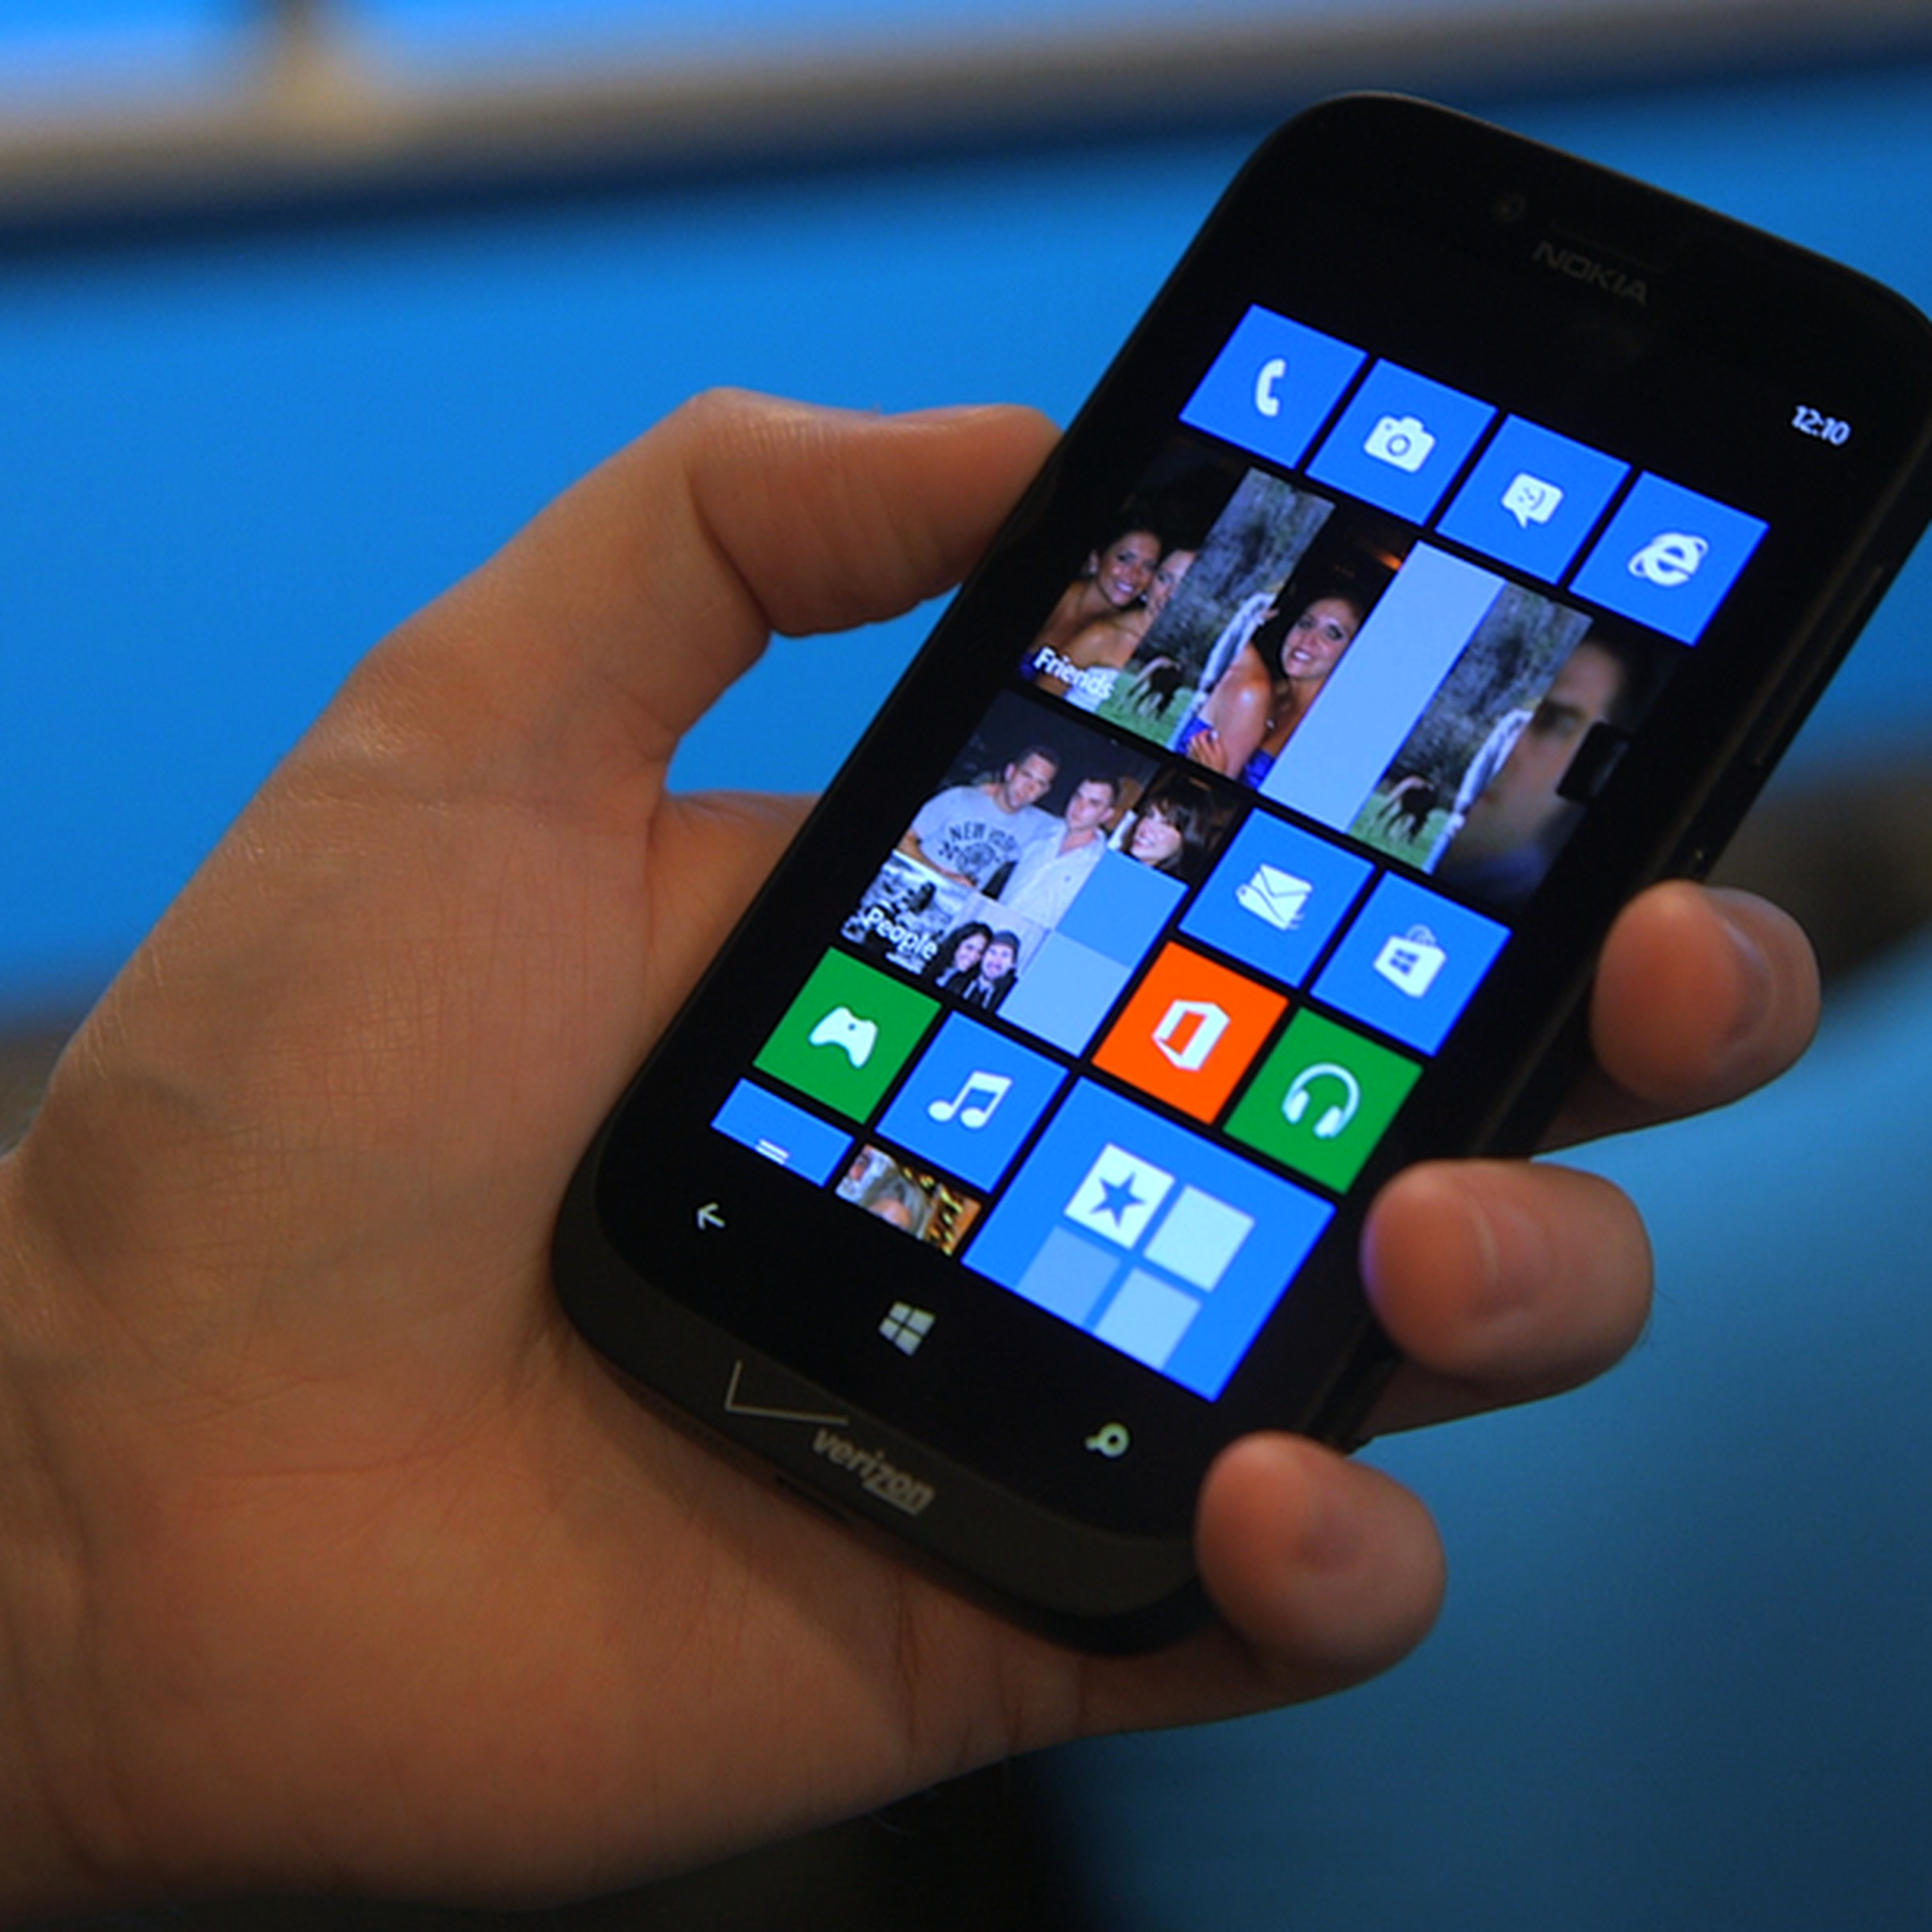 Nokia Lumia 822 hands-on